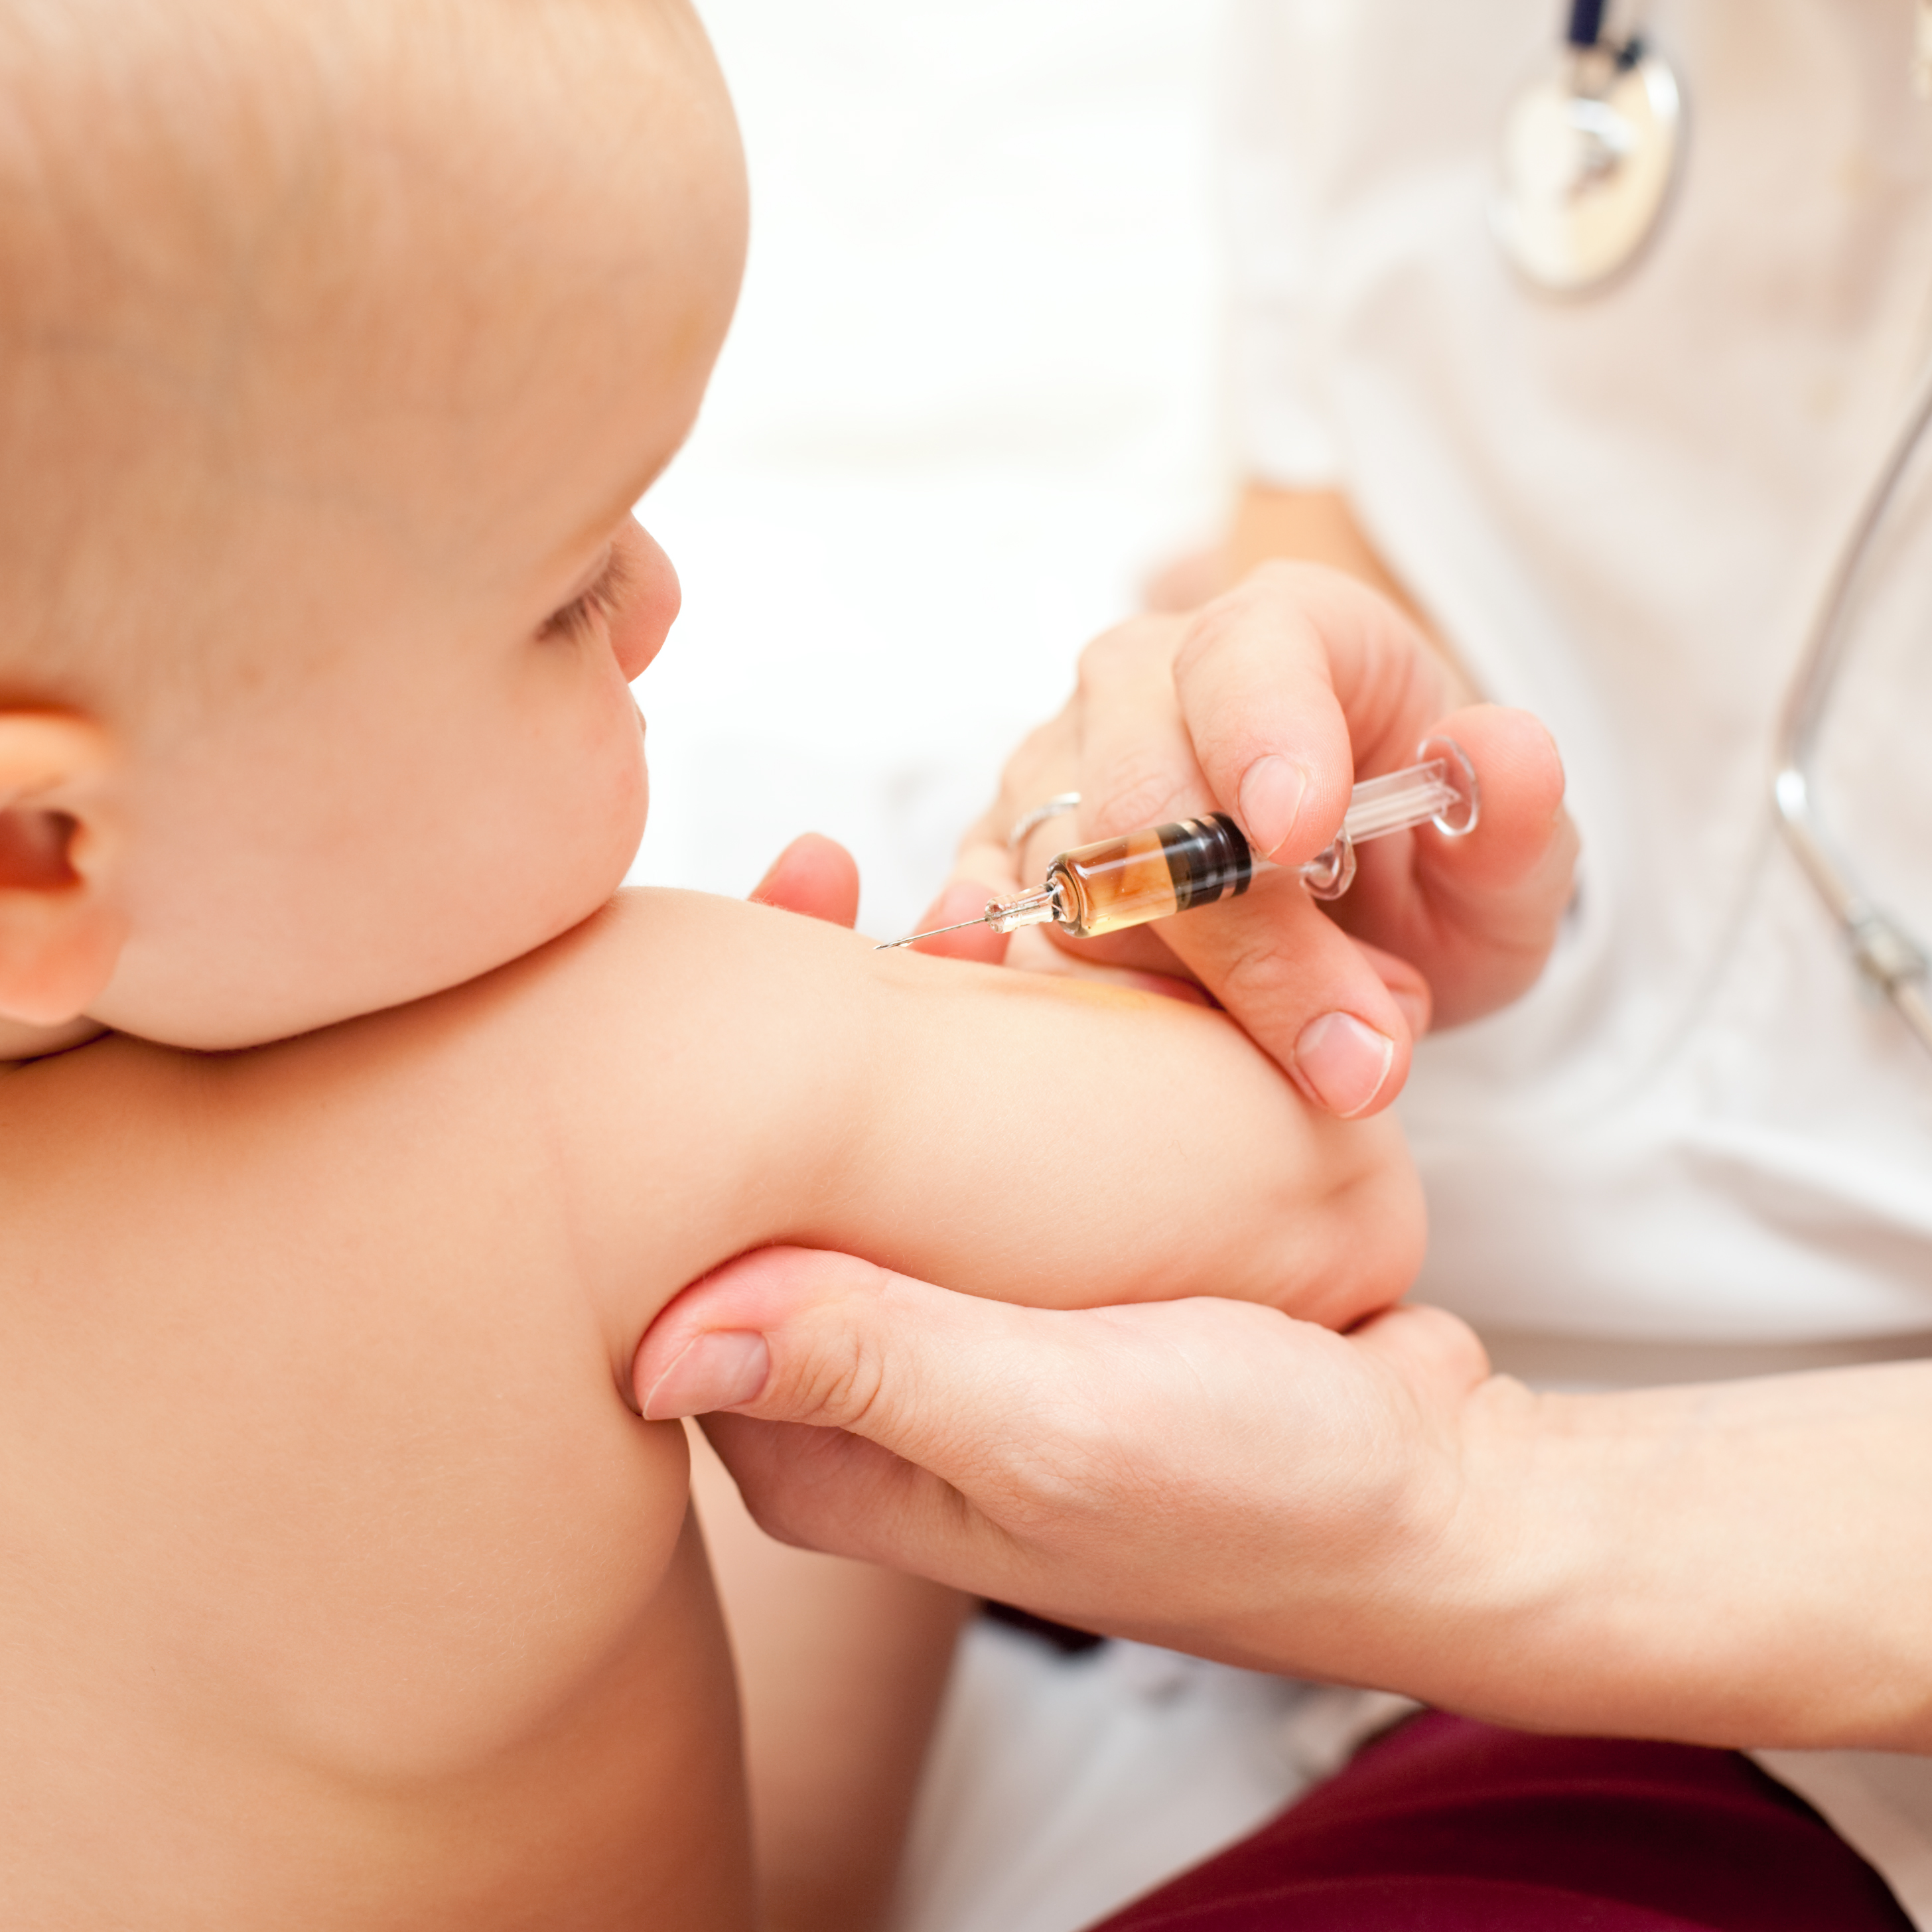 Bébé recevant un vaccin